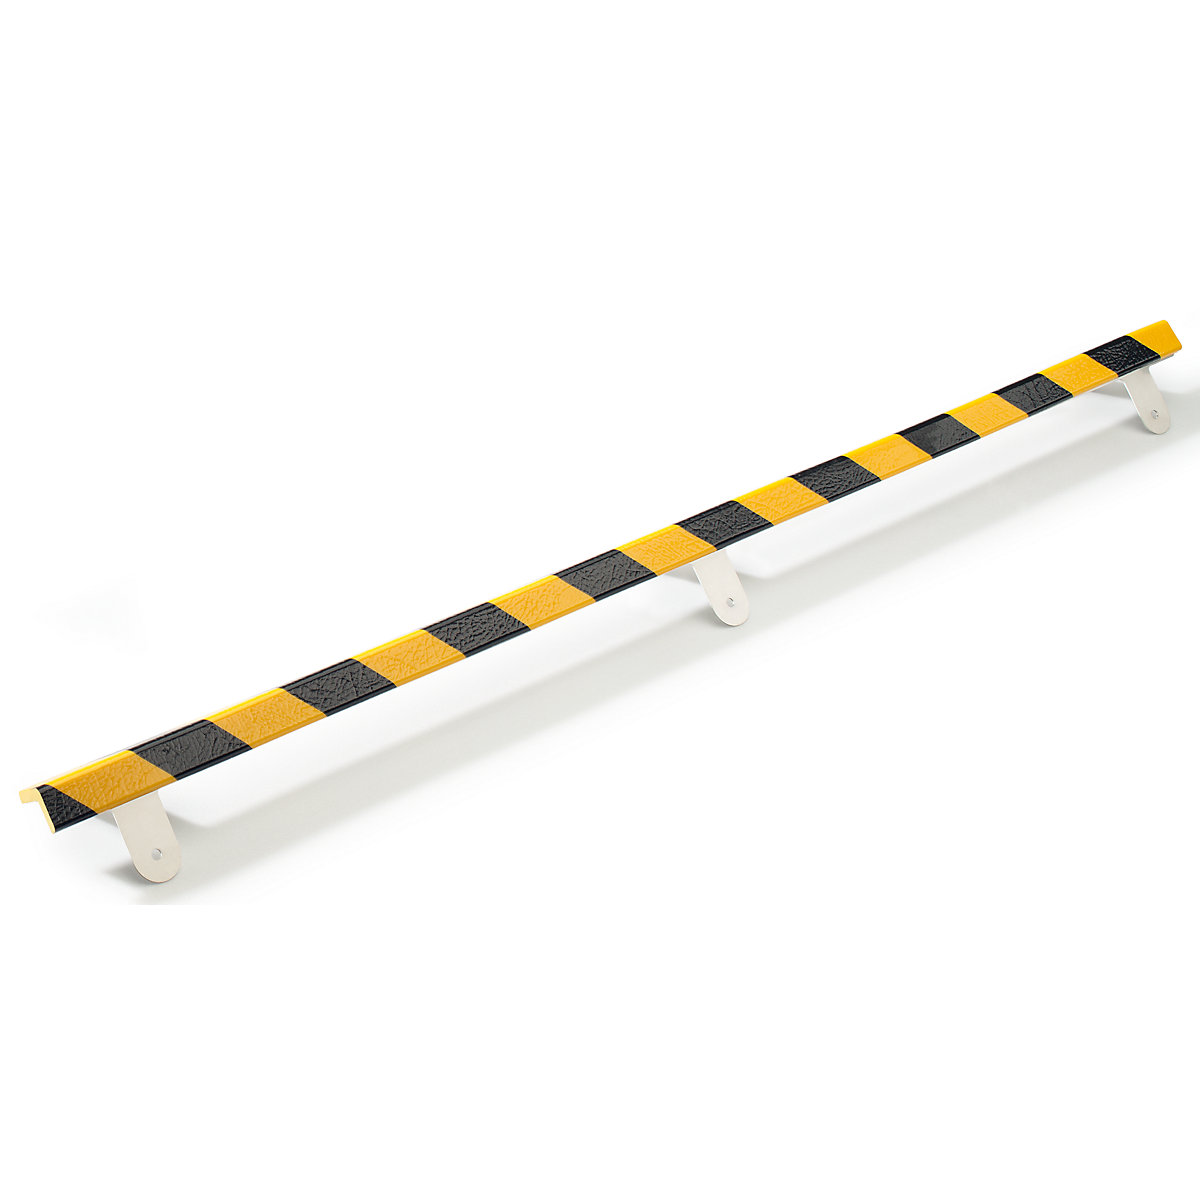 Protecție pentru colț Knuffi® cu șină de montaj – SHG, tip E, bucată de 1 m, negru / galben